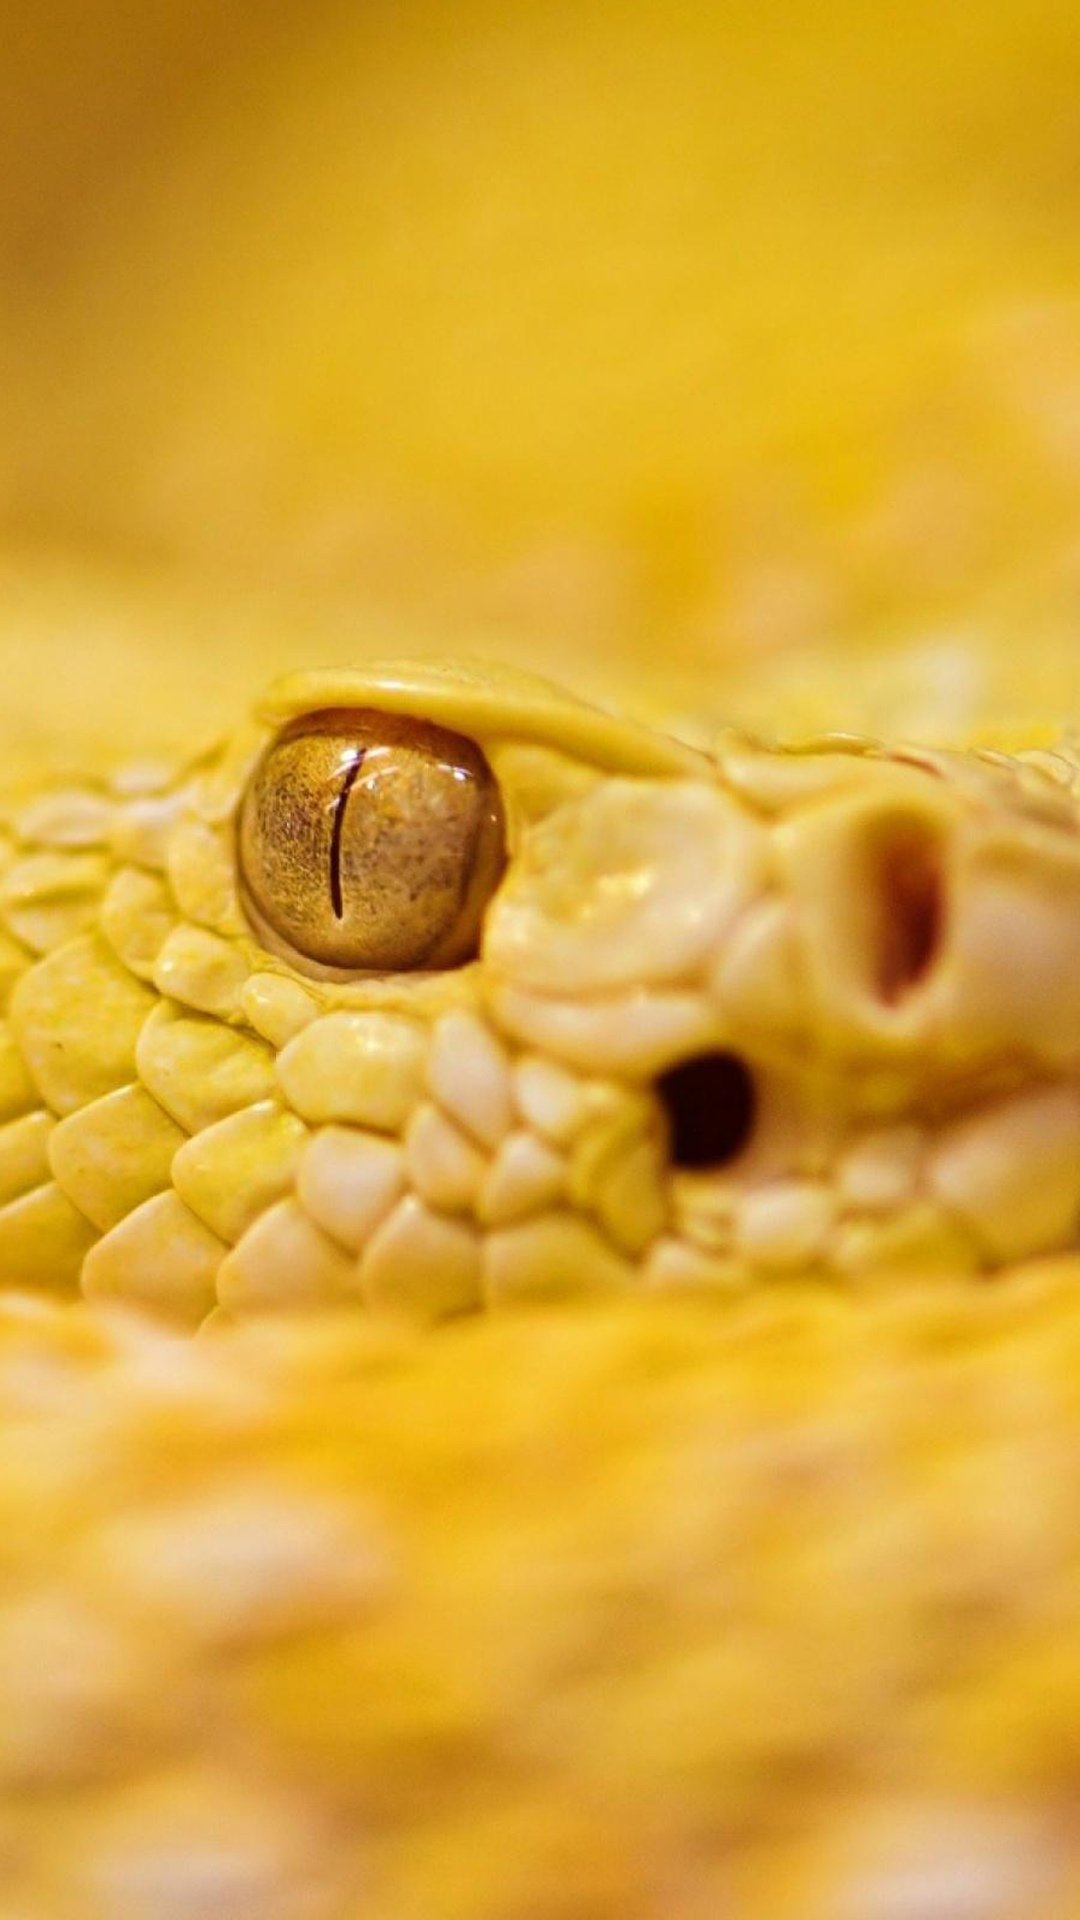 响尾蛇黄色